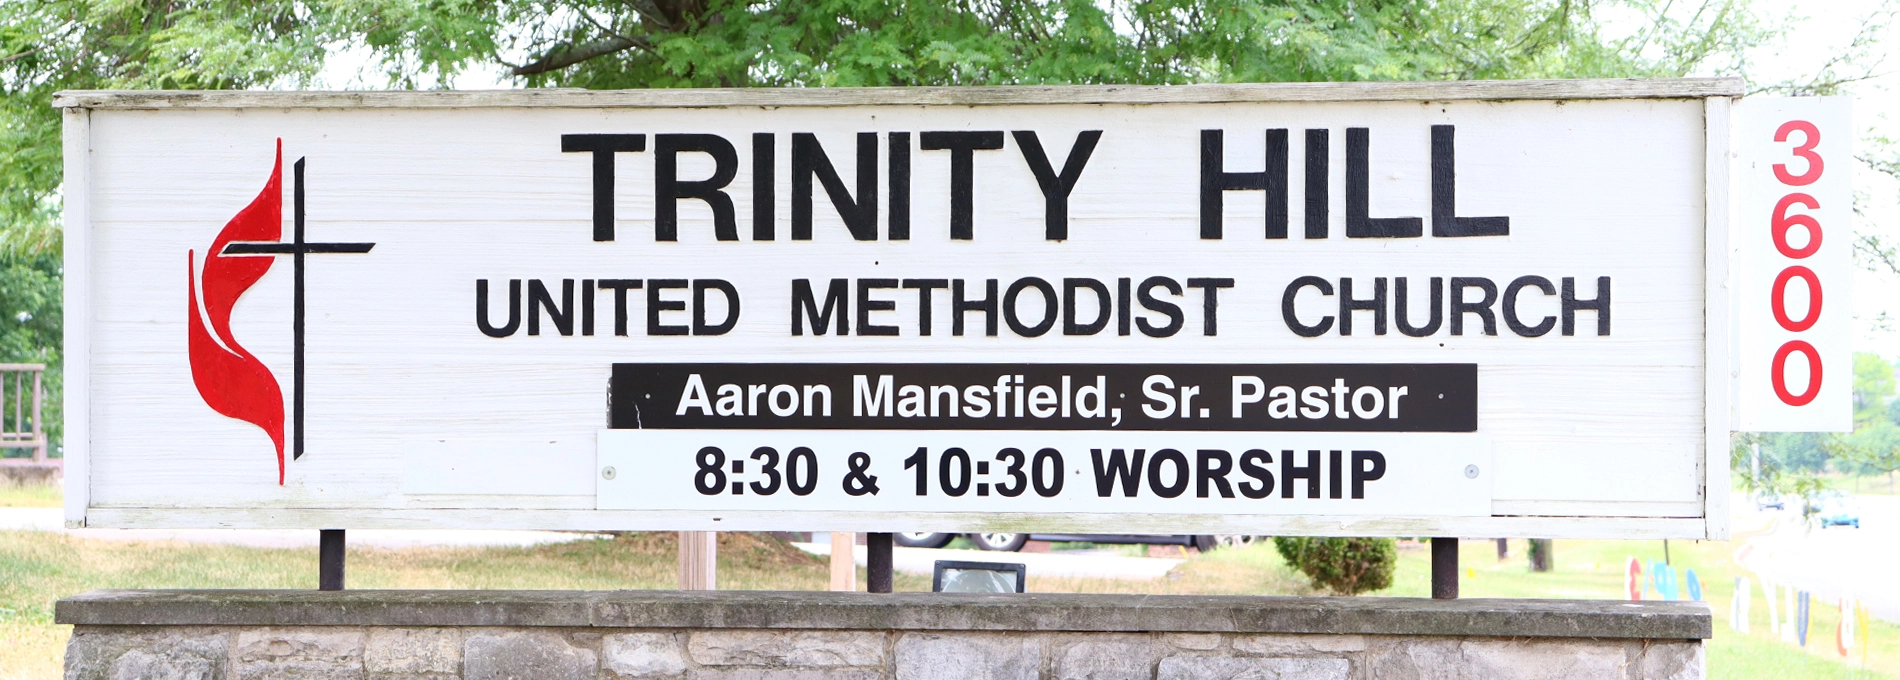 Contact Trinity Hill UMC